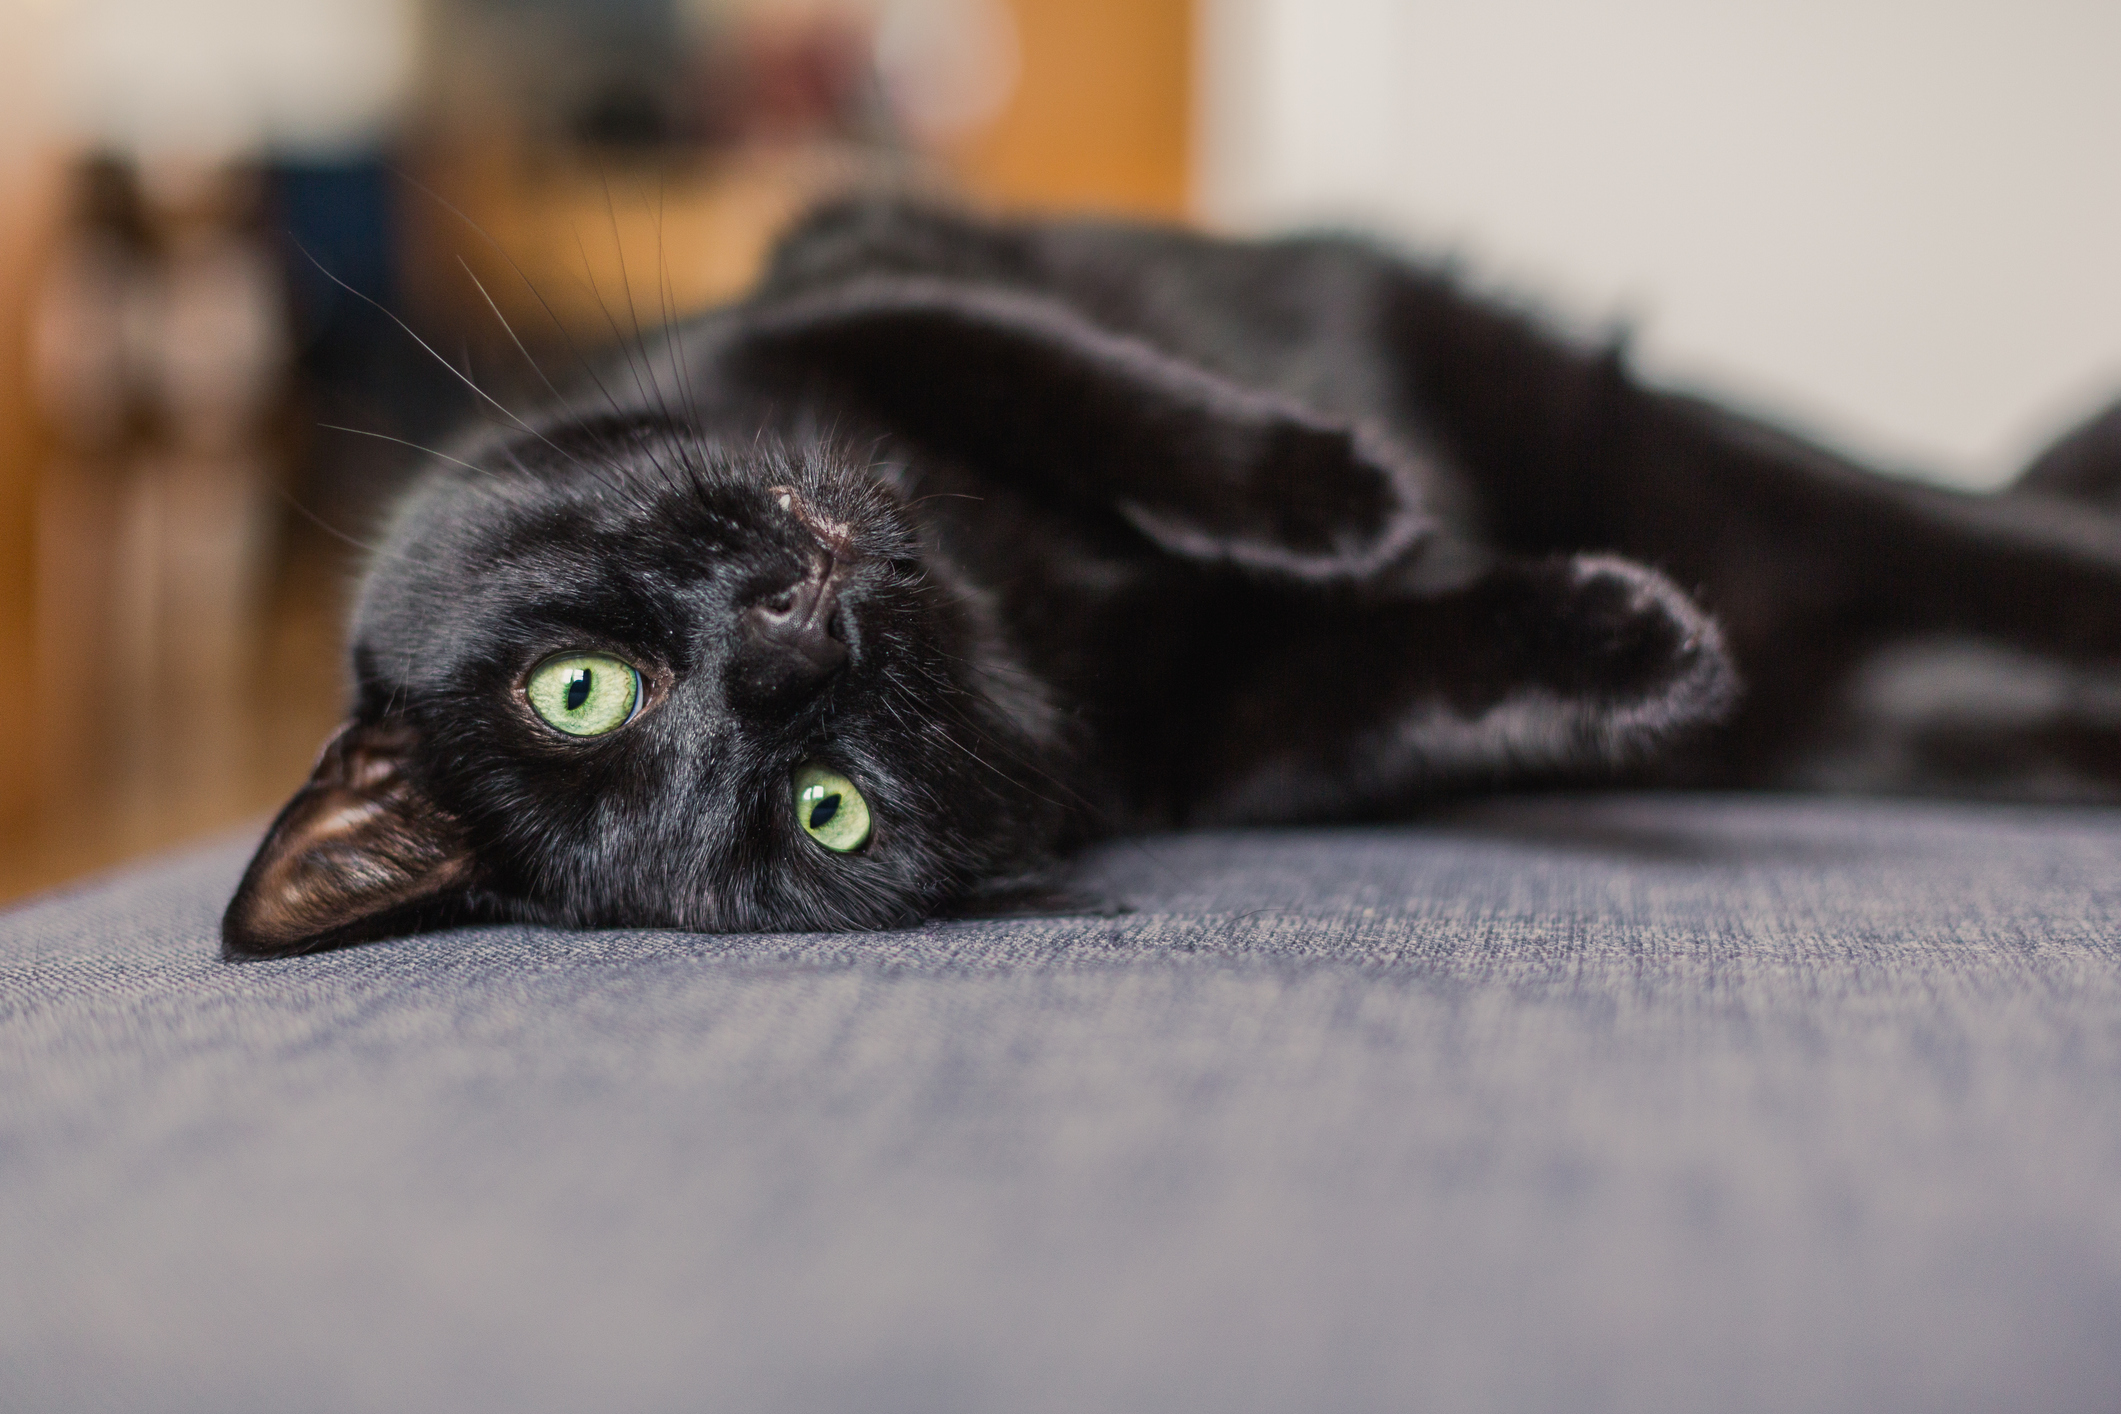 Black Cat laying on gray sofa looking up at camera